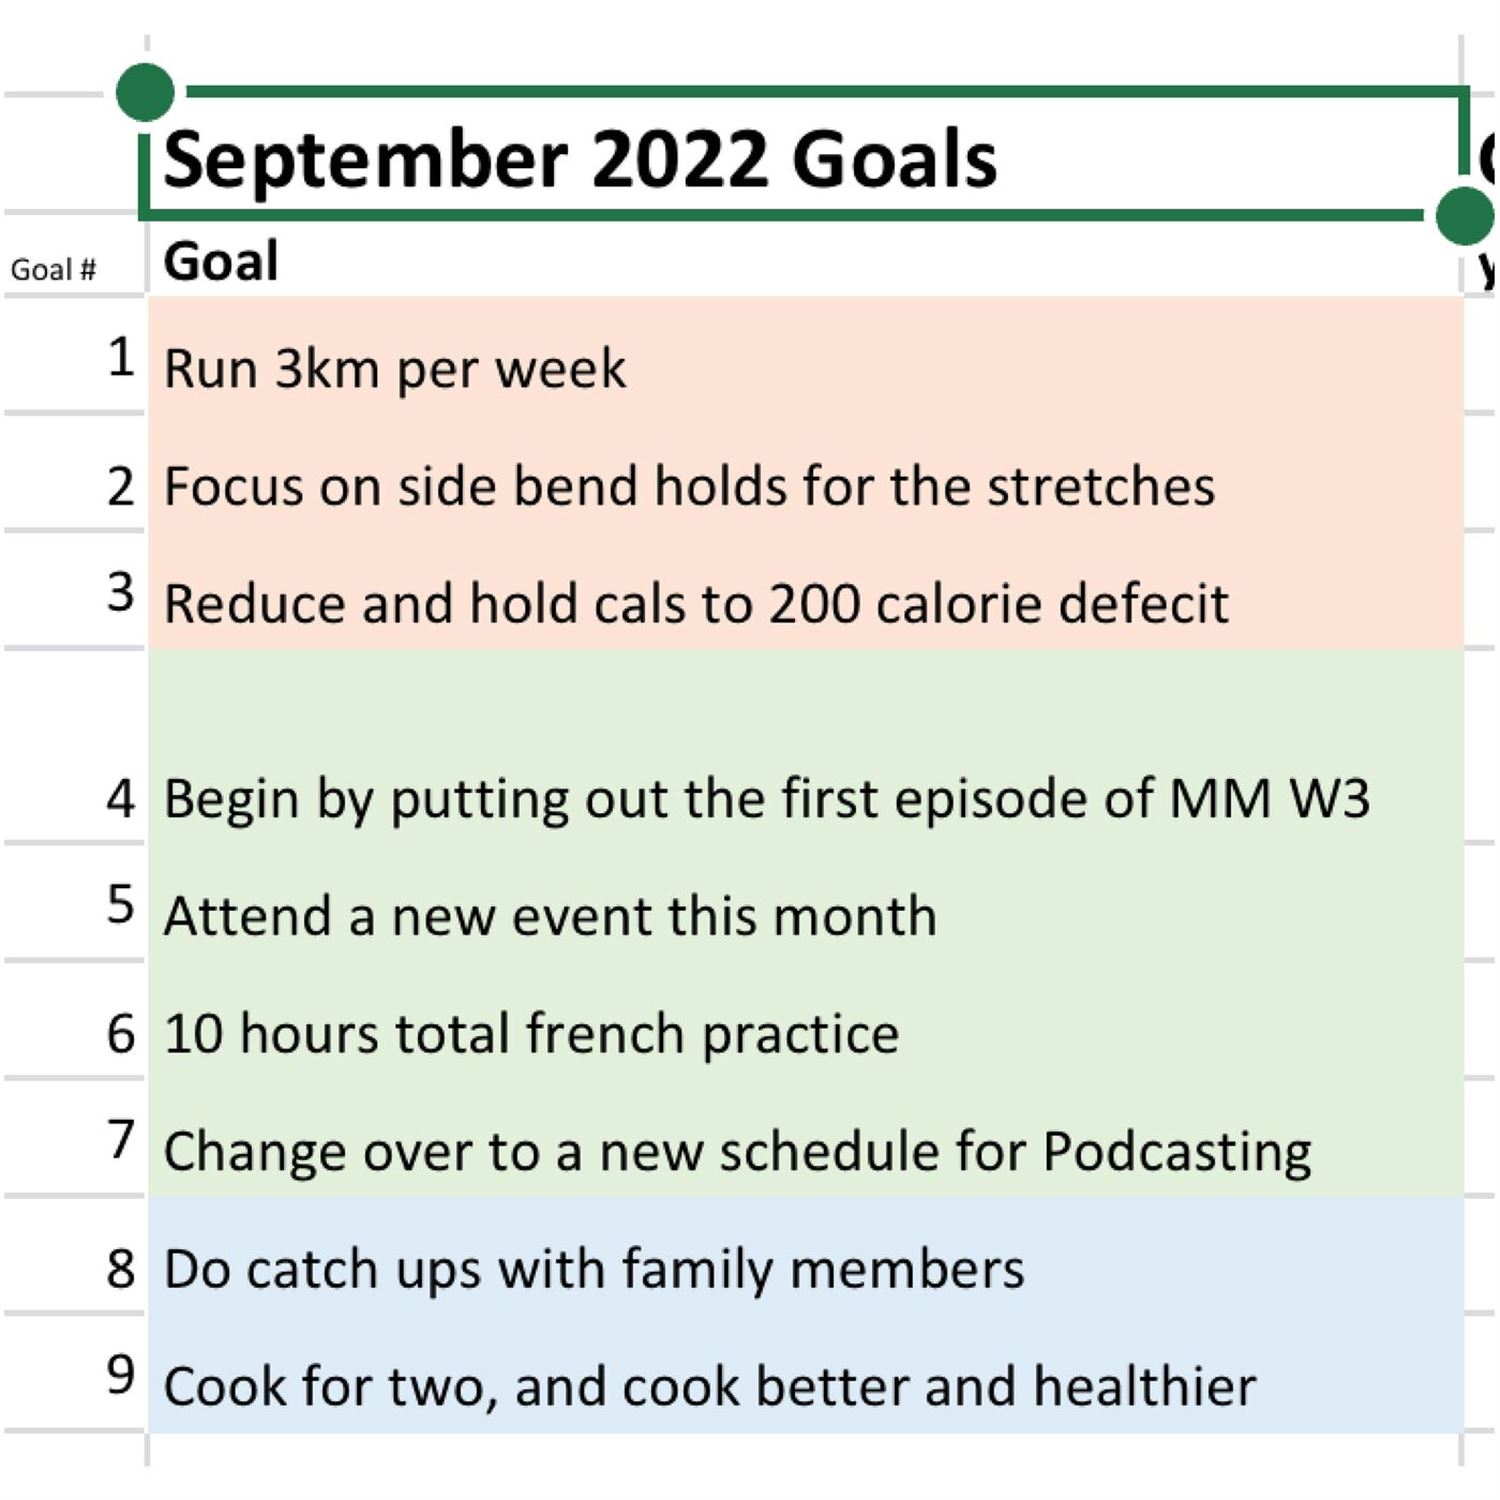 Juan's September Goals